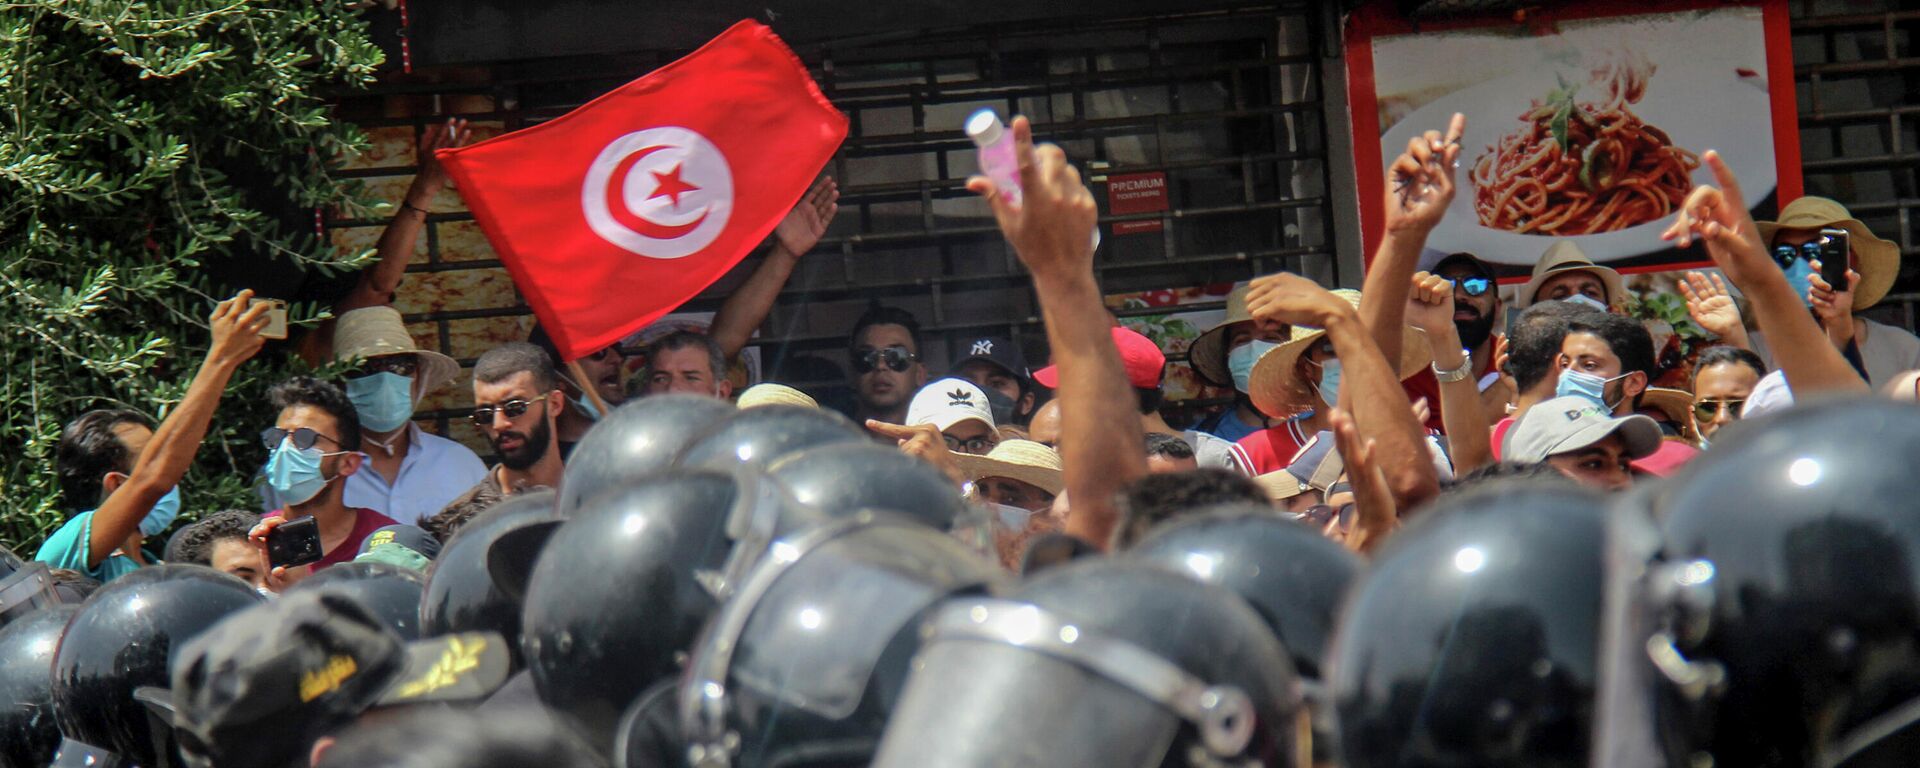 Velike demonstracije u Tunisu  - Sputnik Srbija, 1920, 26.07.2021